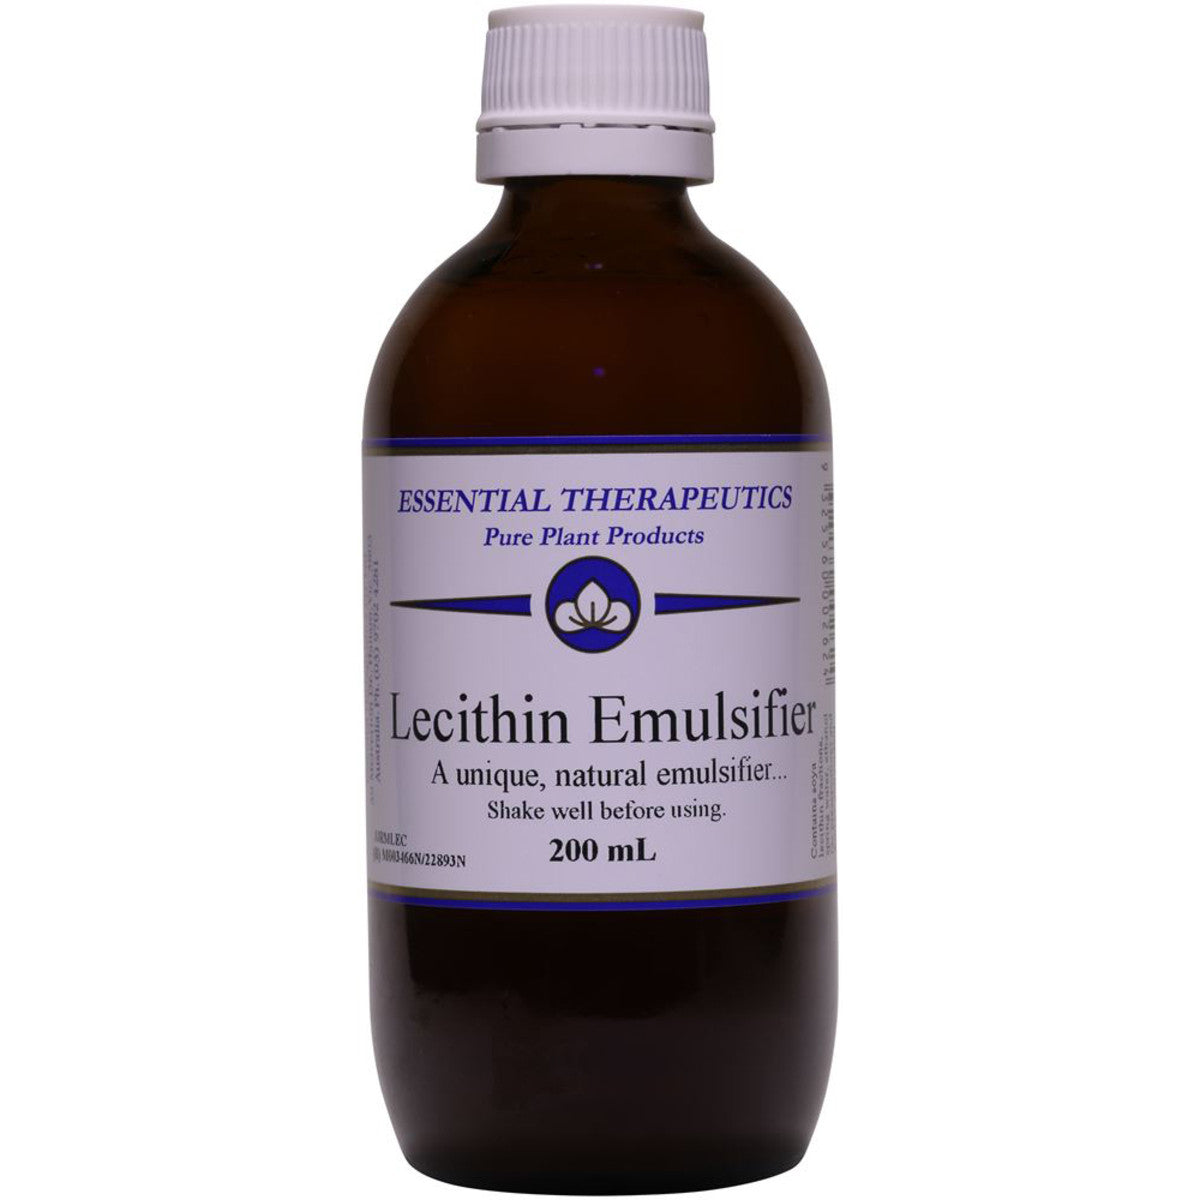 Essential Therapeutic - Lecithin Emulsifier 200ml